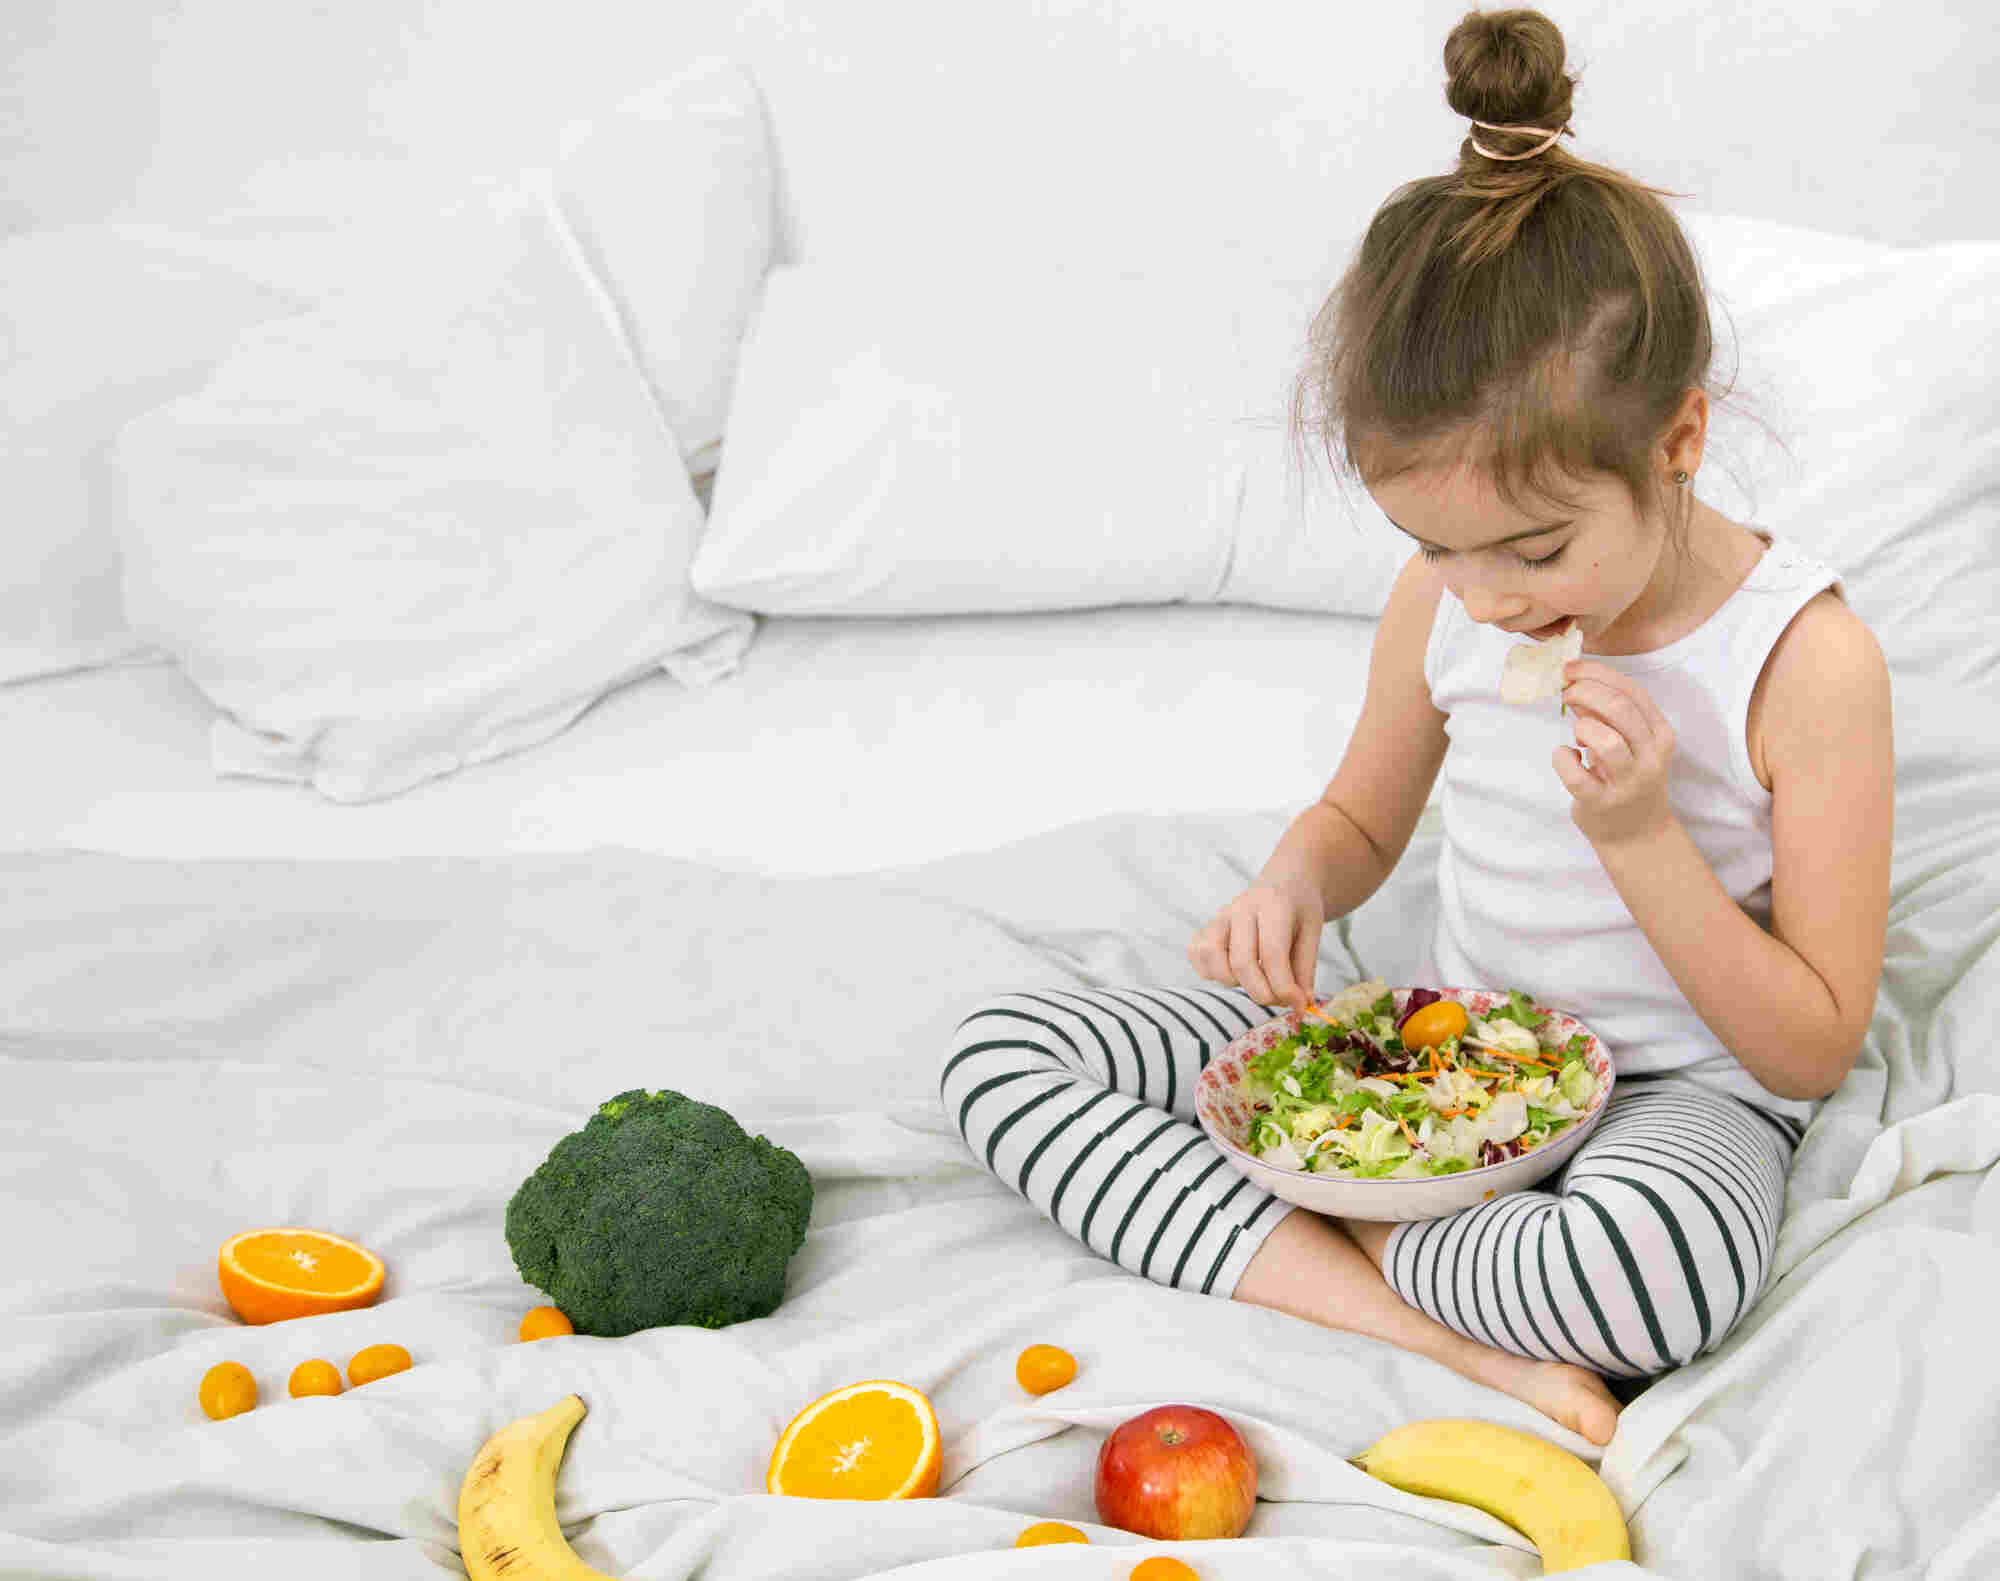 Healthy Eating Habits in Children